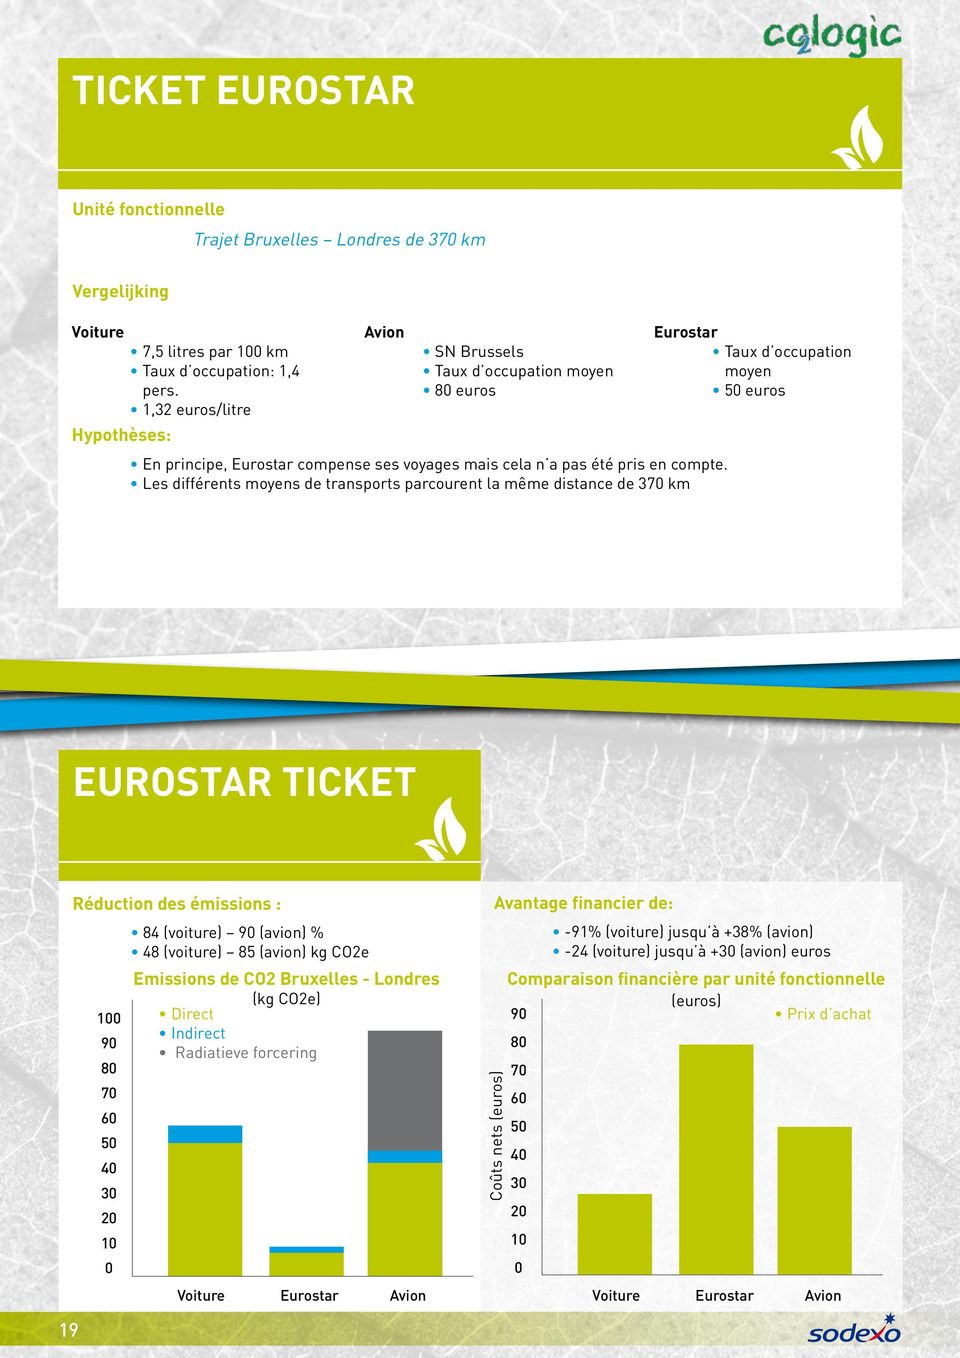 Les différents moyens de transports parcourent la même distance de 37 km Eurostar Taux d occupation moyen 5 euros Eurostar ticket Réduction des émissions : 1 9 8 7 6 5 4 3 2 1 84 (voiture) 9 (avion)